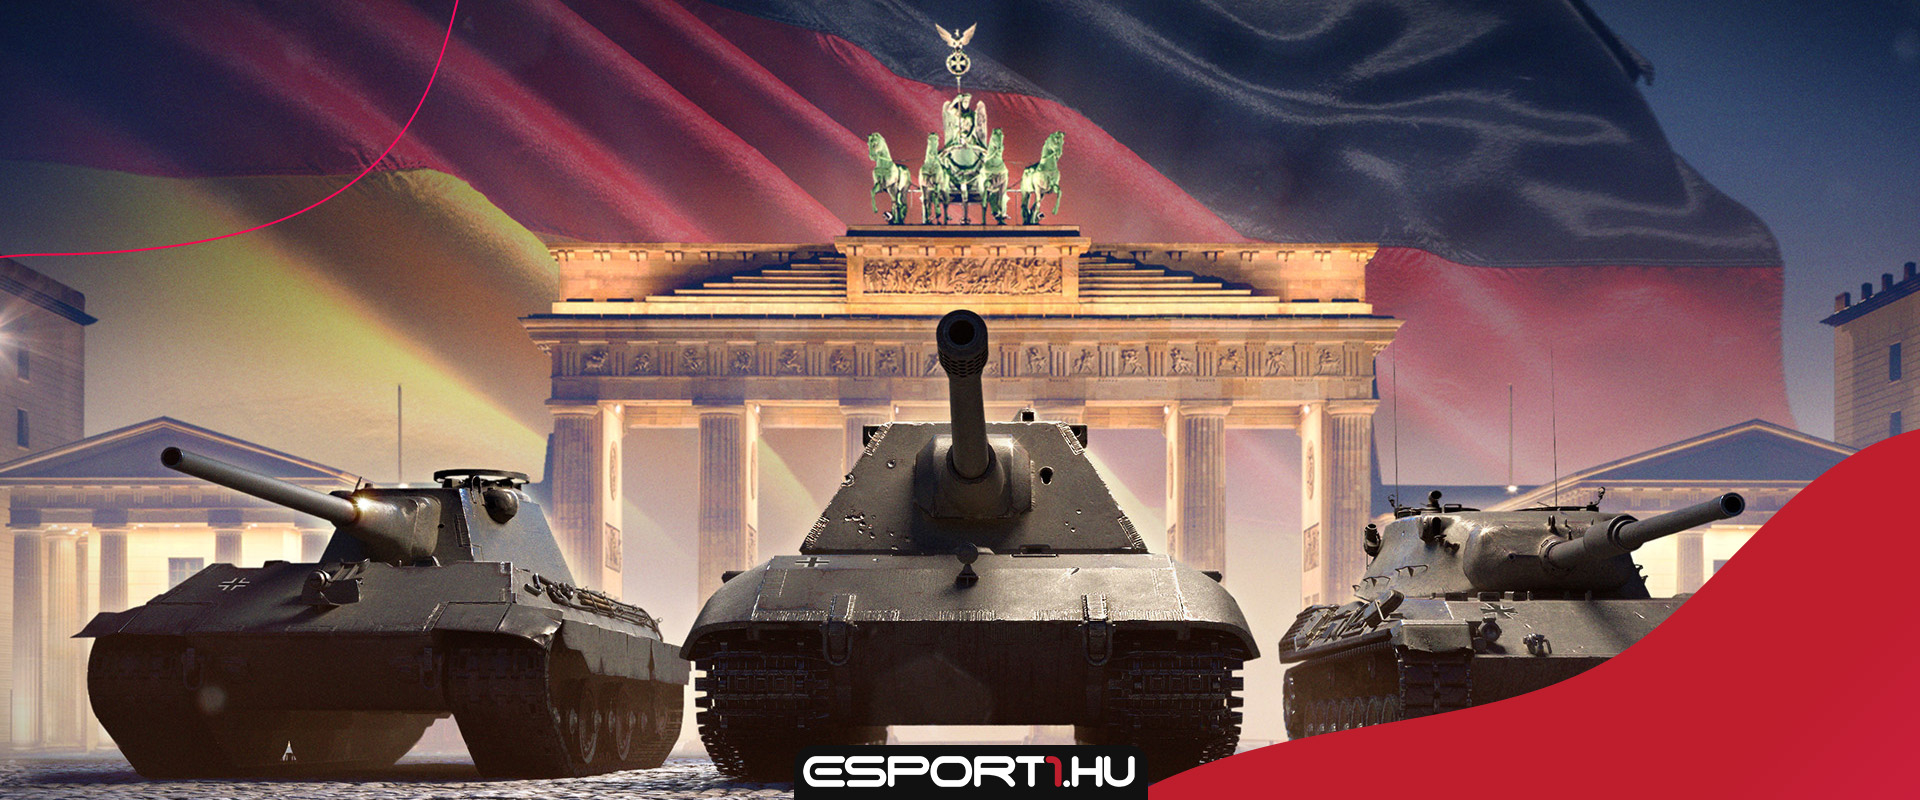 Játssz német tankokkal, és szerezz ingyen prémium harckocsit!